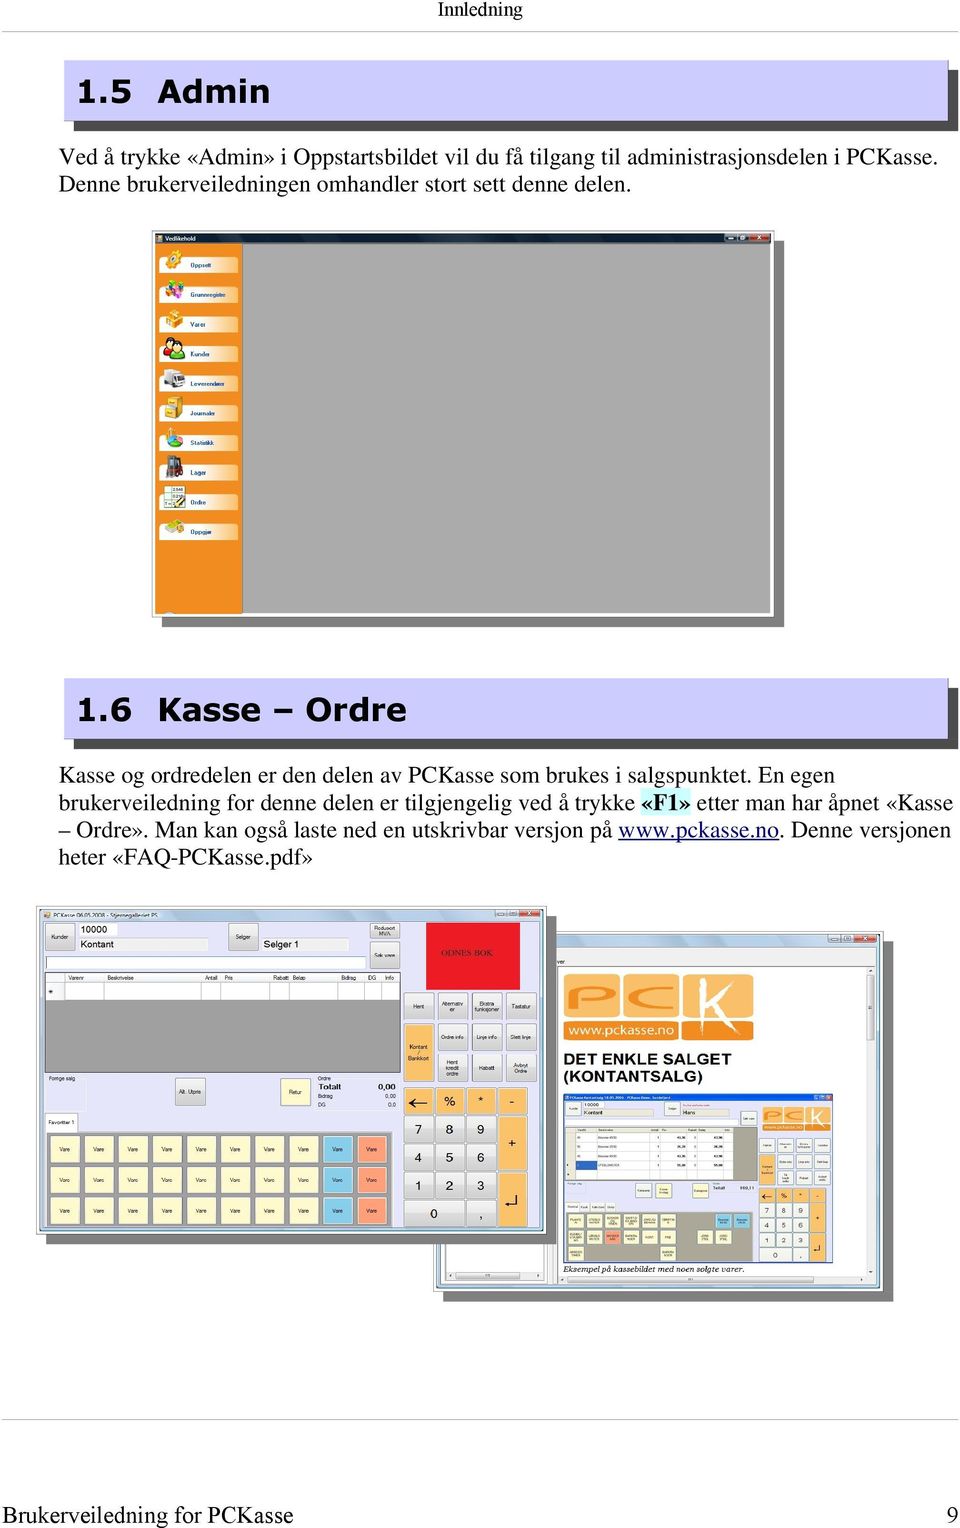 6 Kasse Ordre Kasse og ordredelen er den delen av PCKasse som brukes i salgspunktet.